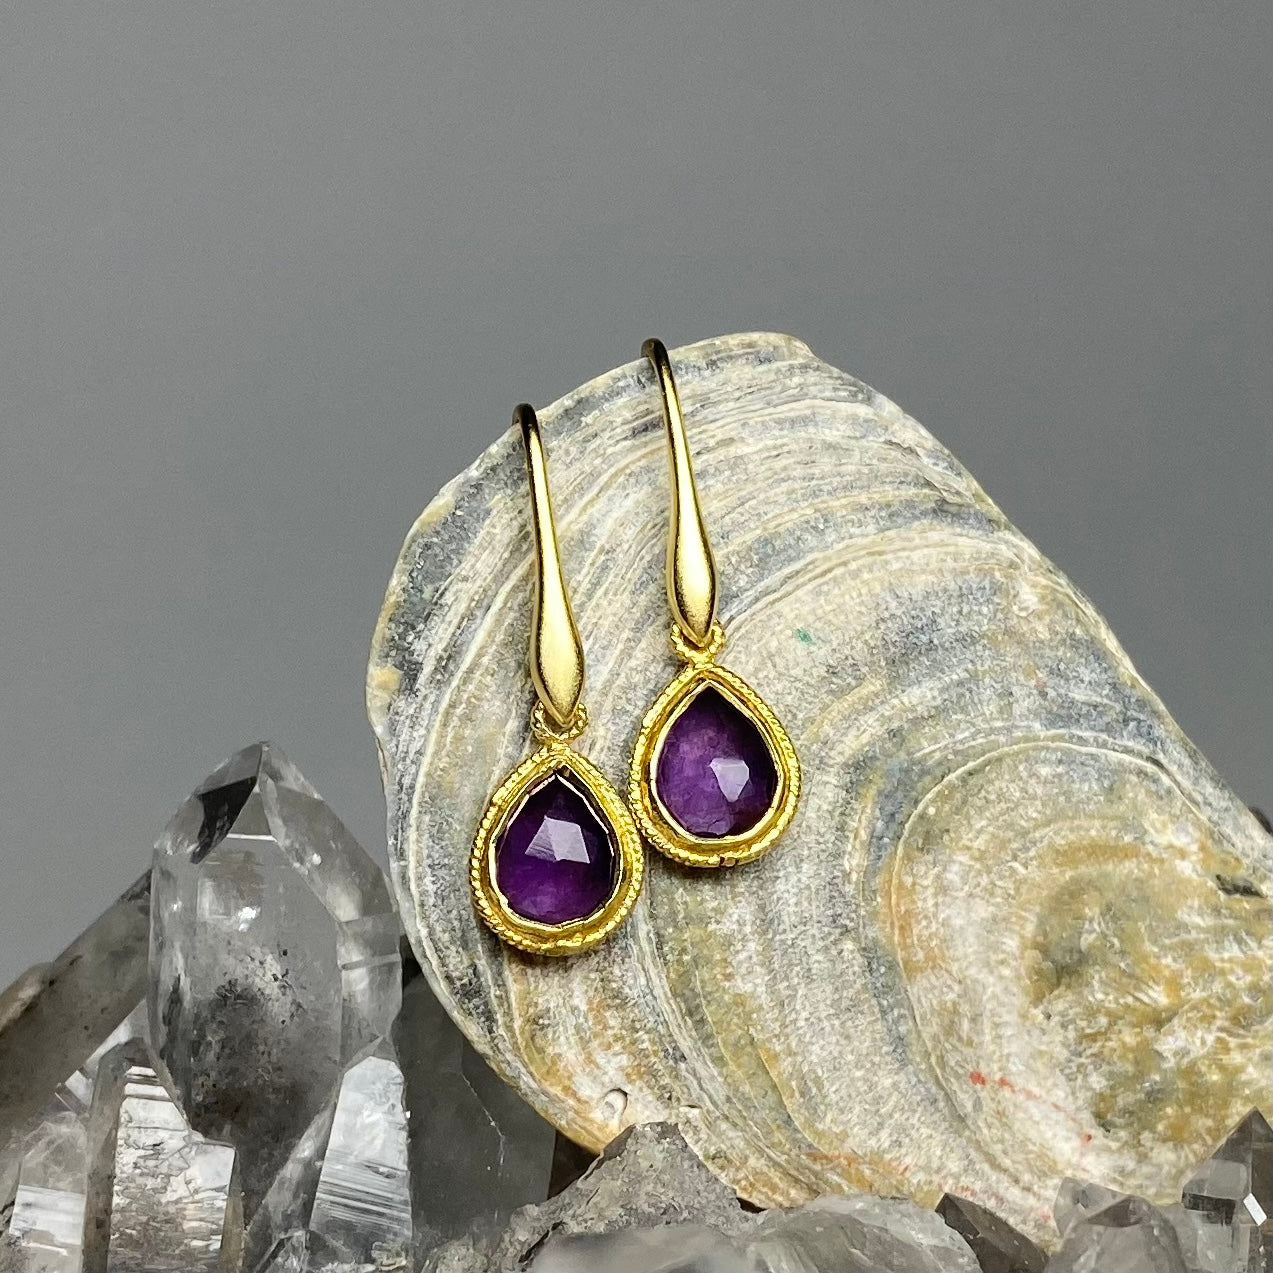 Tiny Marquise Loop + Hook Earwire (Sterling Silver) - 1 pair-The Bead Gallery Honolulu